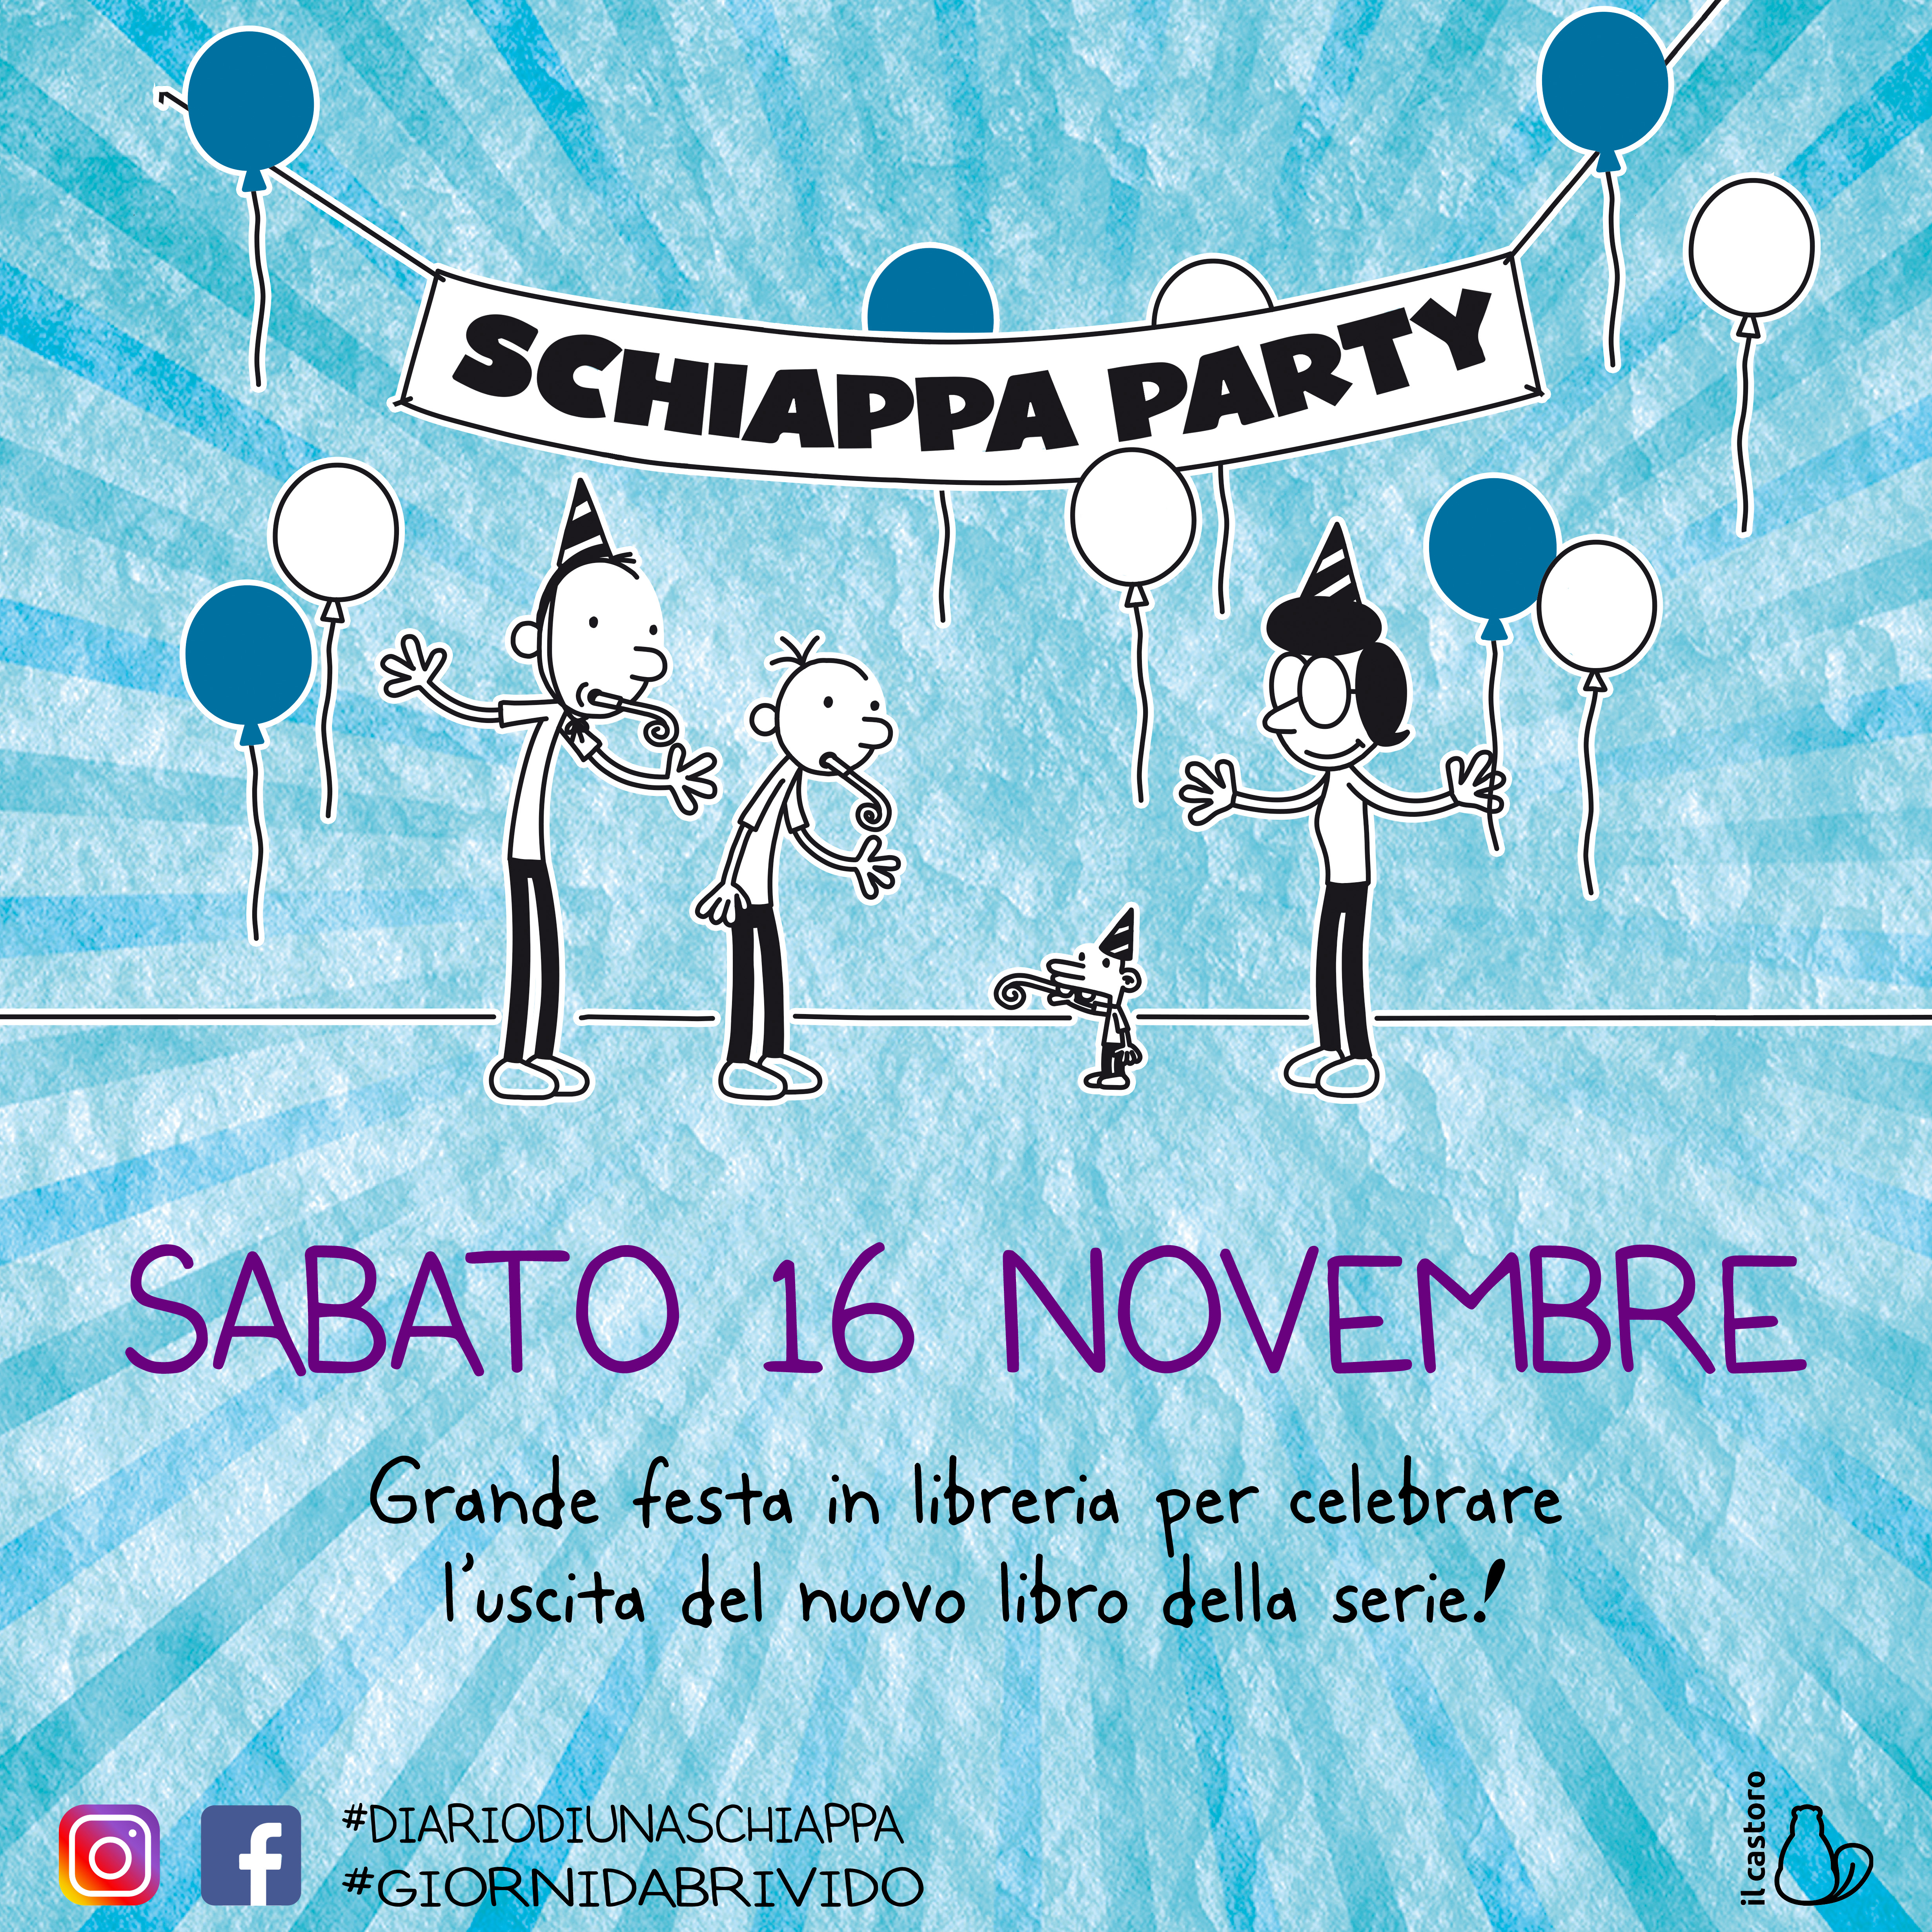 Arriva lo Schiappa Party!